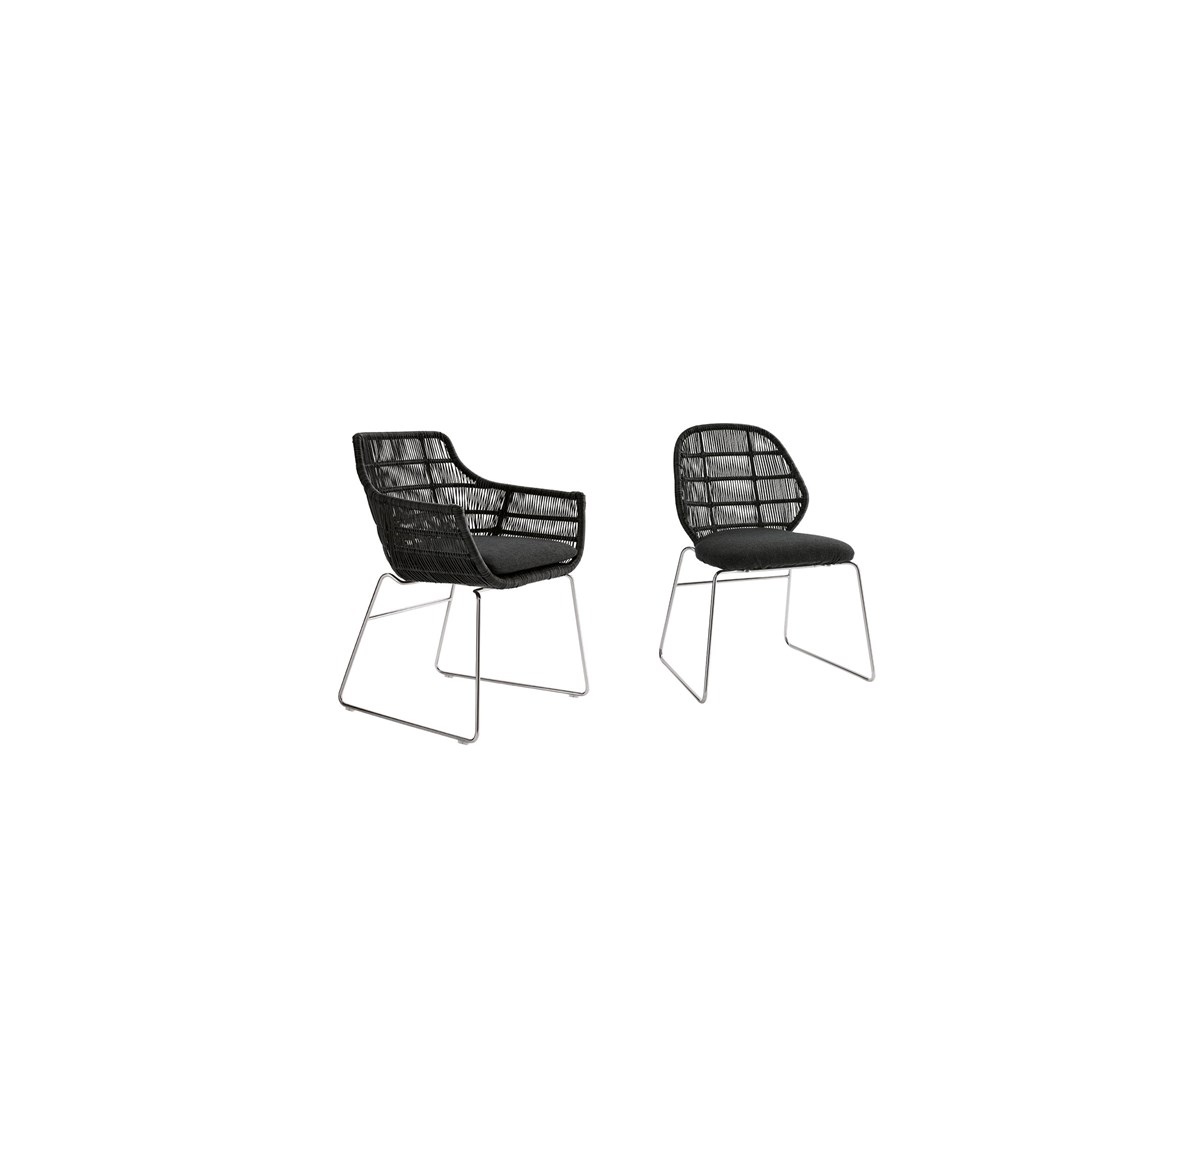 Thissslider 2 106 Outdoor Chair Crinoline 03 1